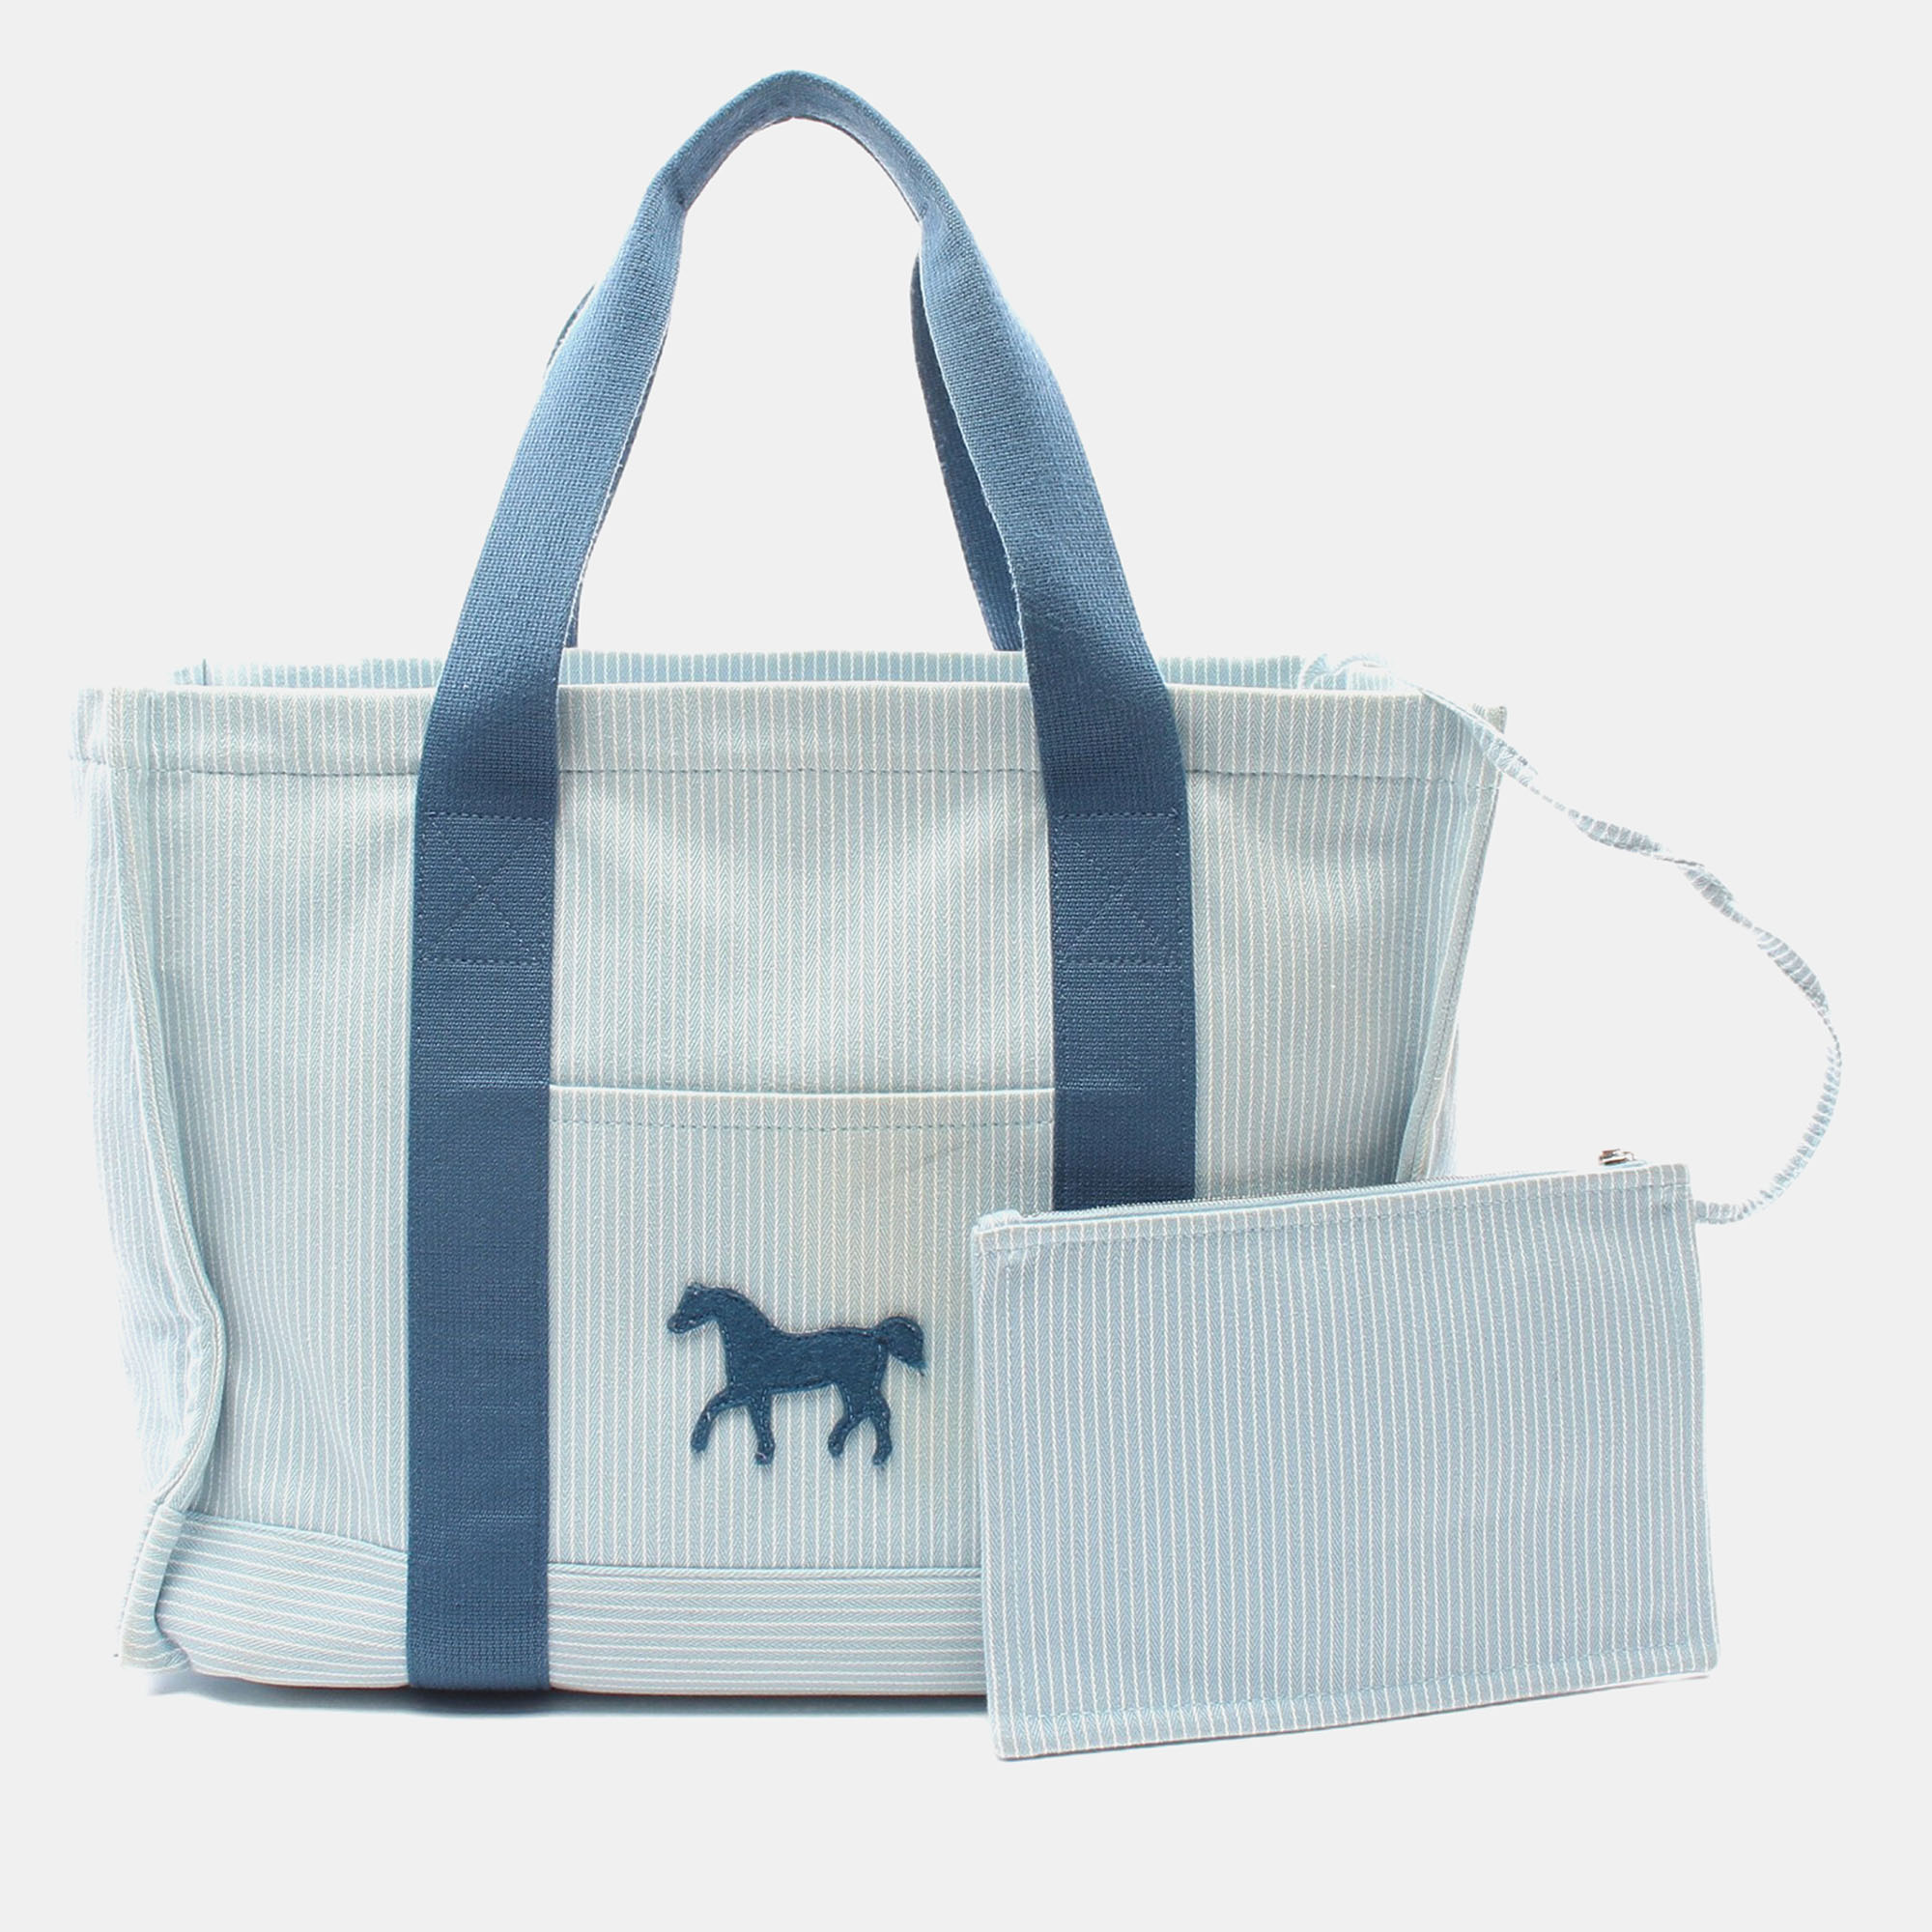 Hermes kaval color azur mothers bag shoulder bag tote bag canvas light blue white blue